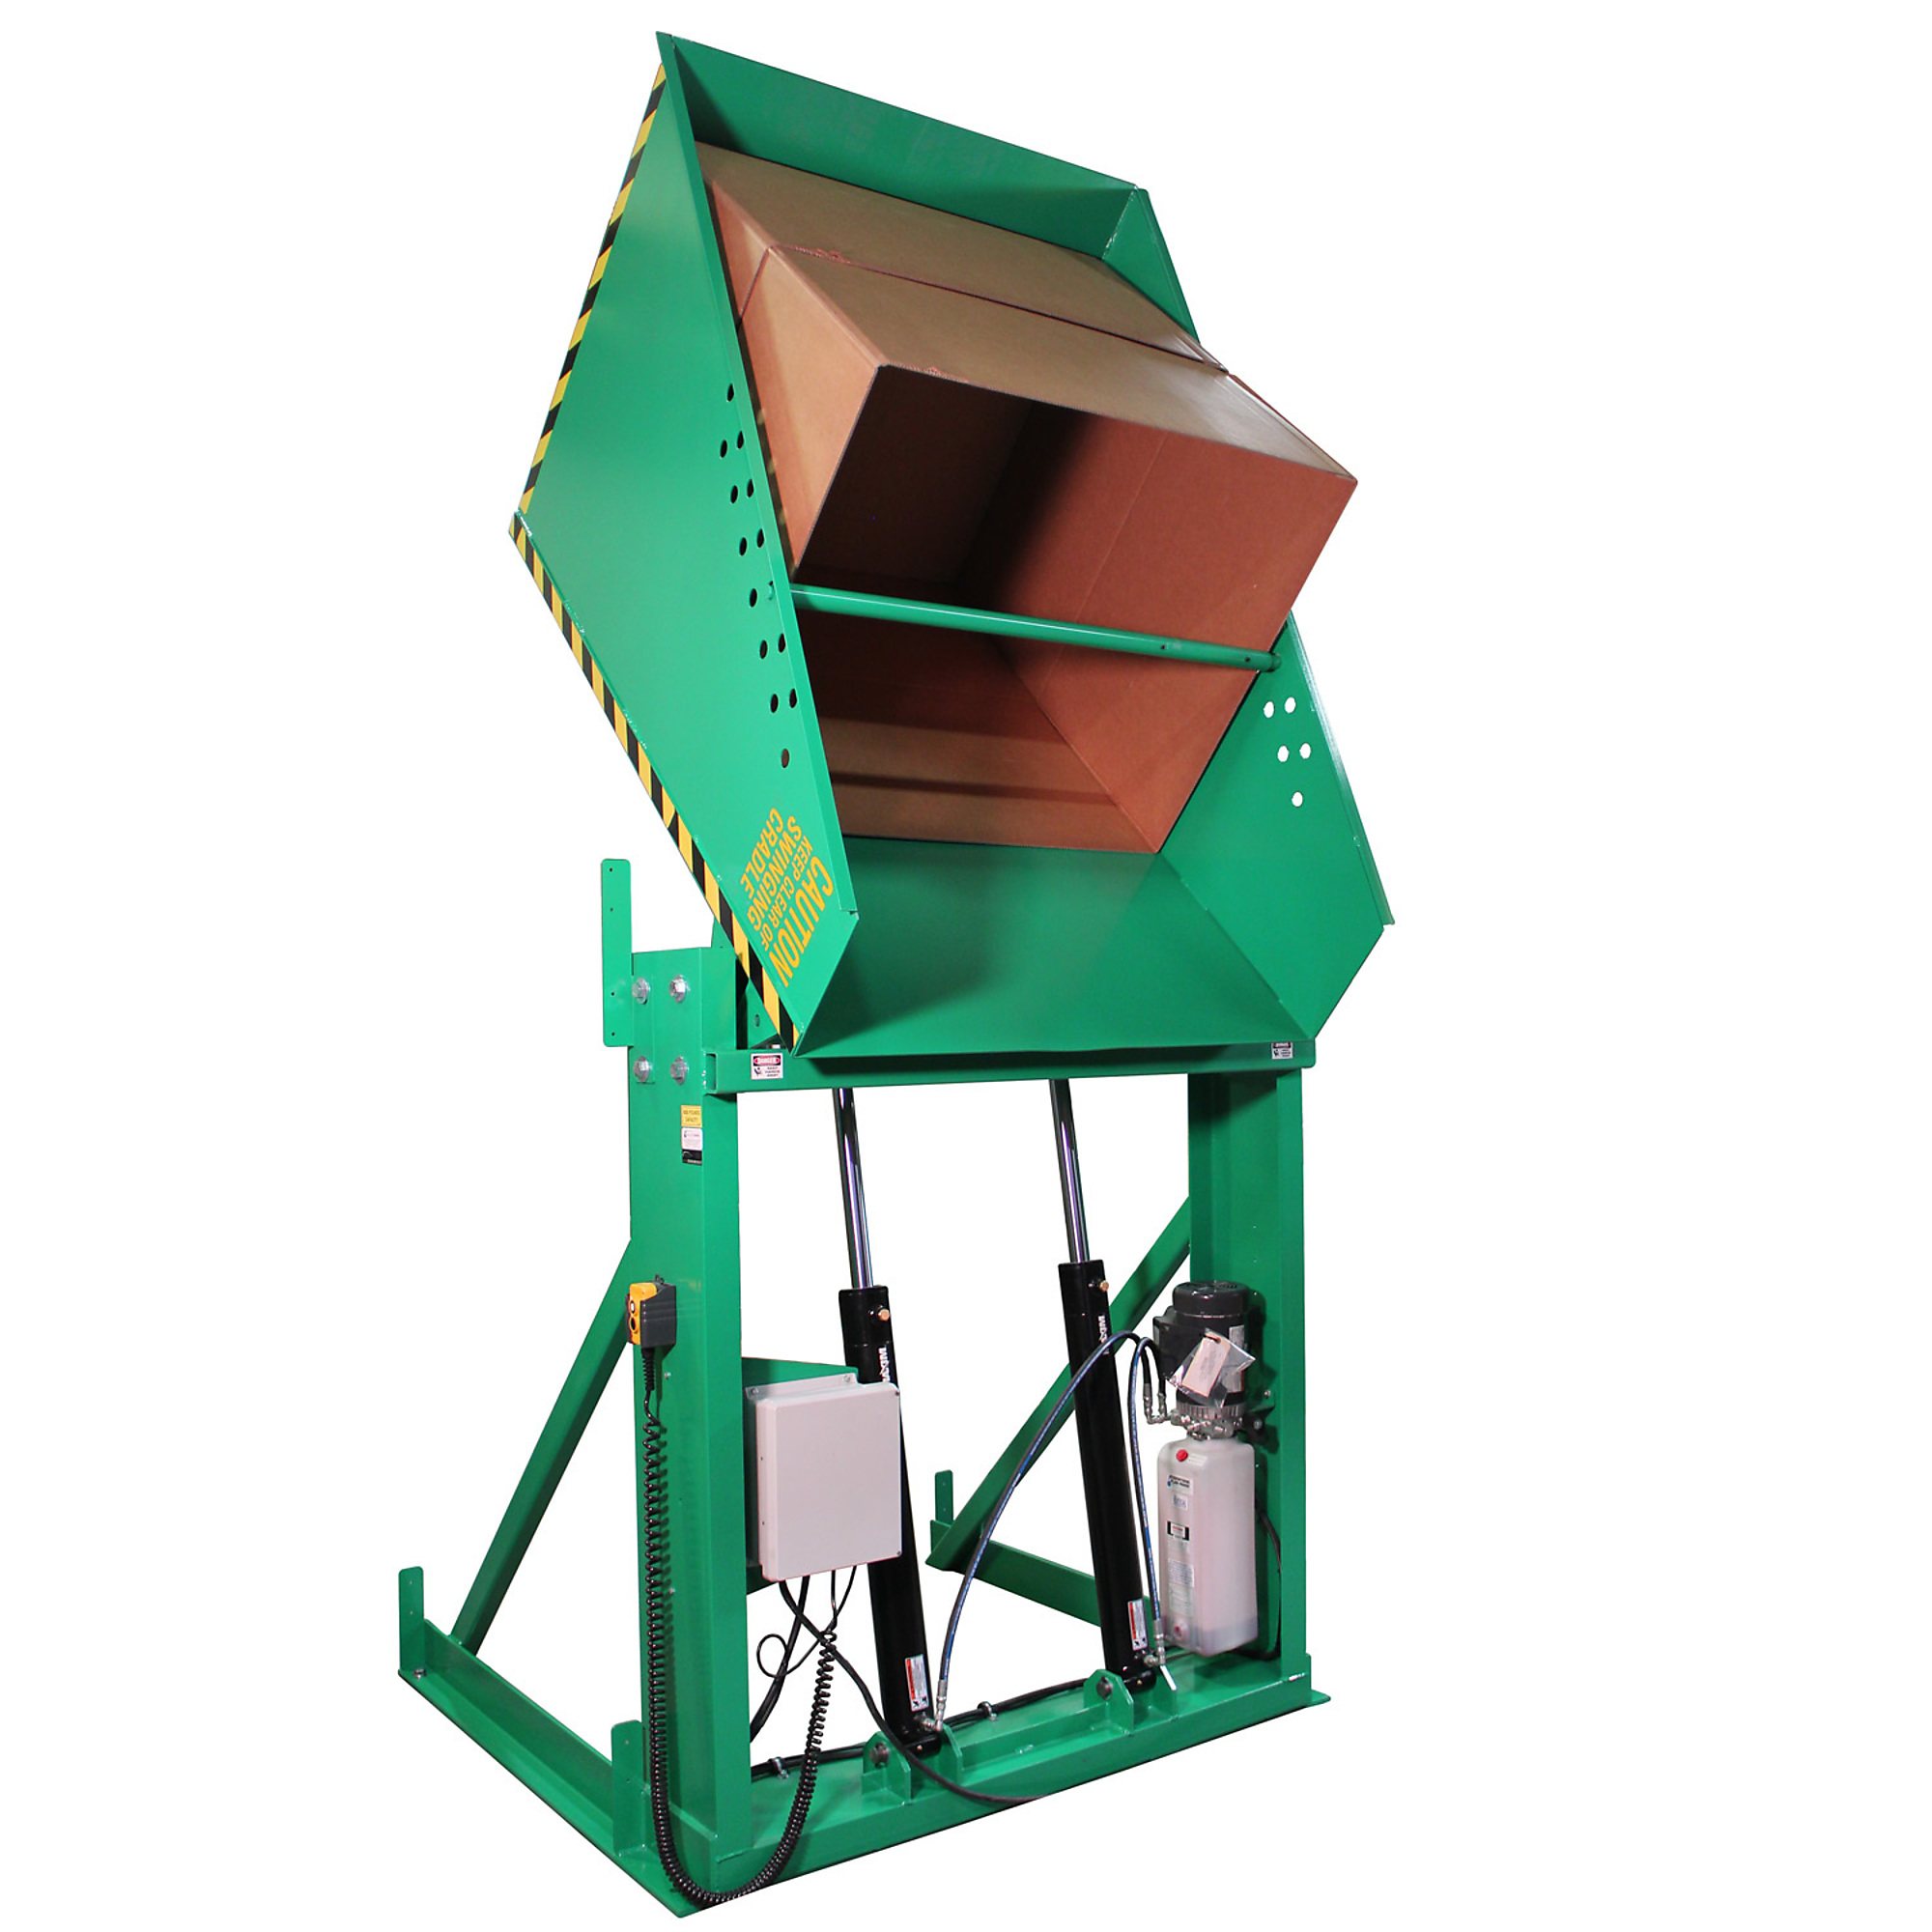 Valley Craft, Box Dumper, 36x36Inch Chute, Capacity 2000 lb, Color Green, Model F80187A7